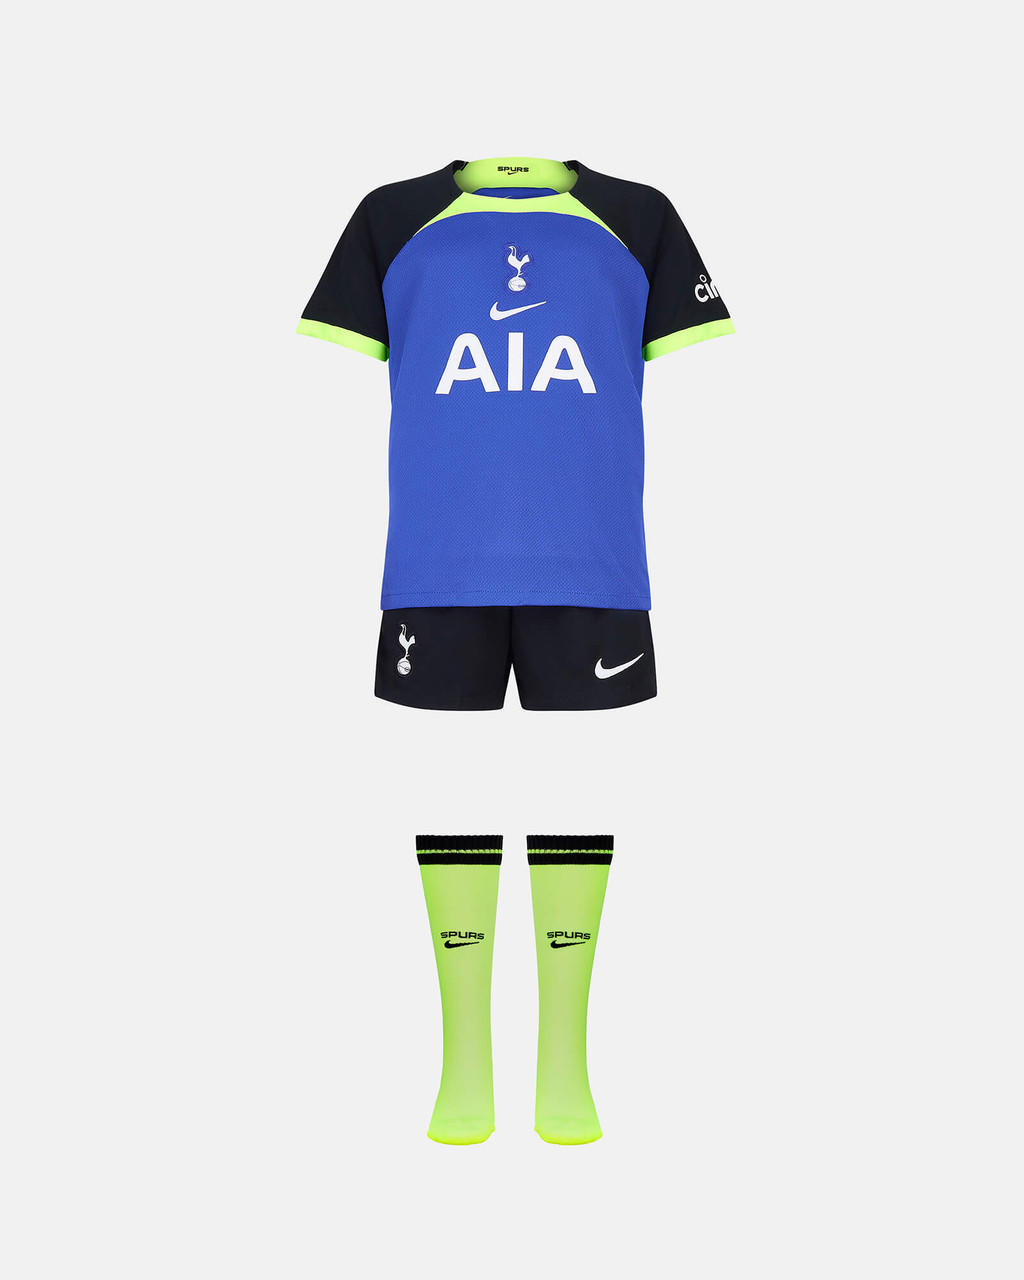 Spurs Little Kids Tottenham Hotspur Away Kit 2022/23 